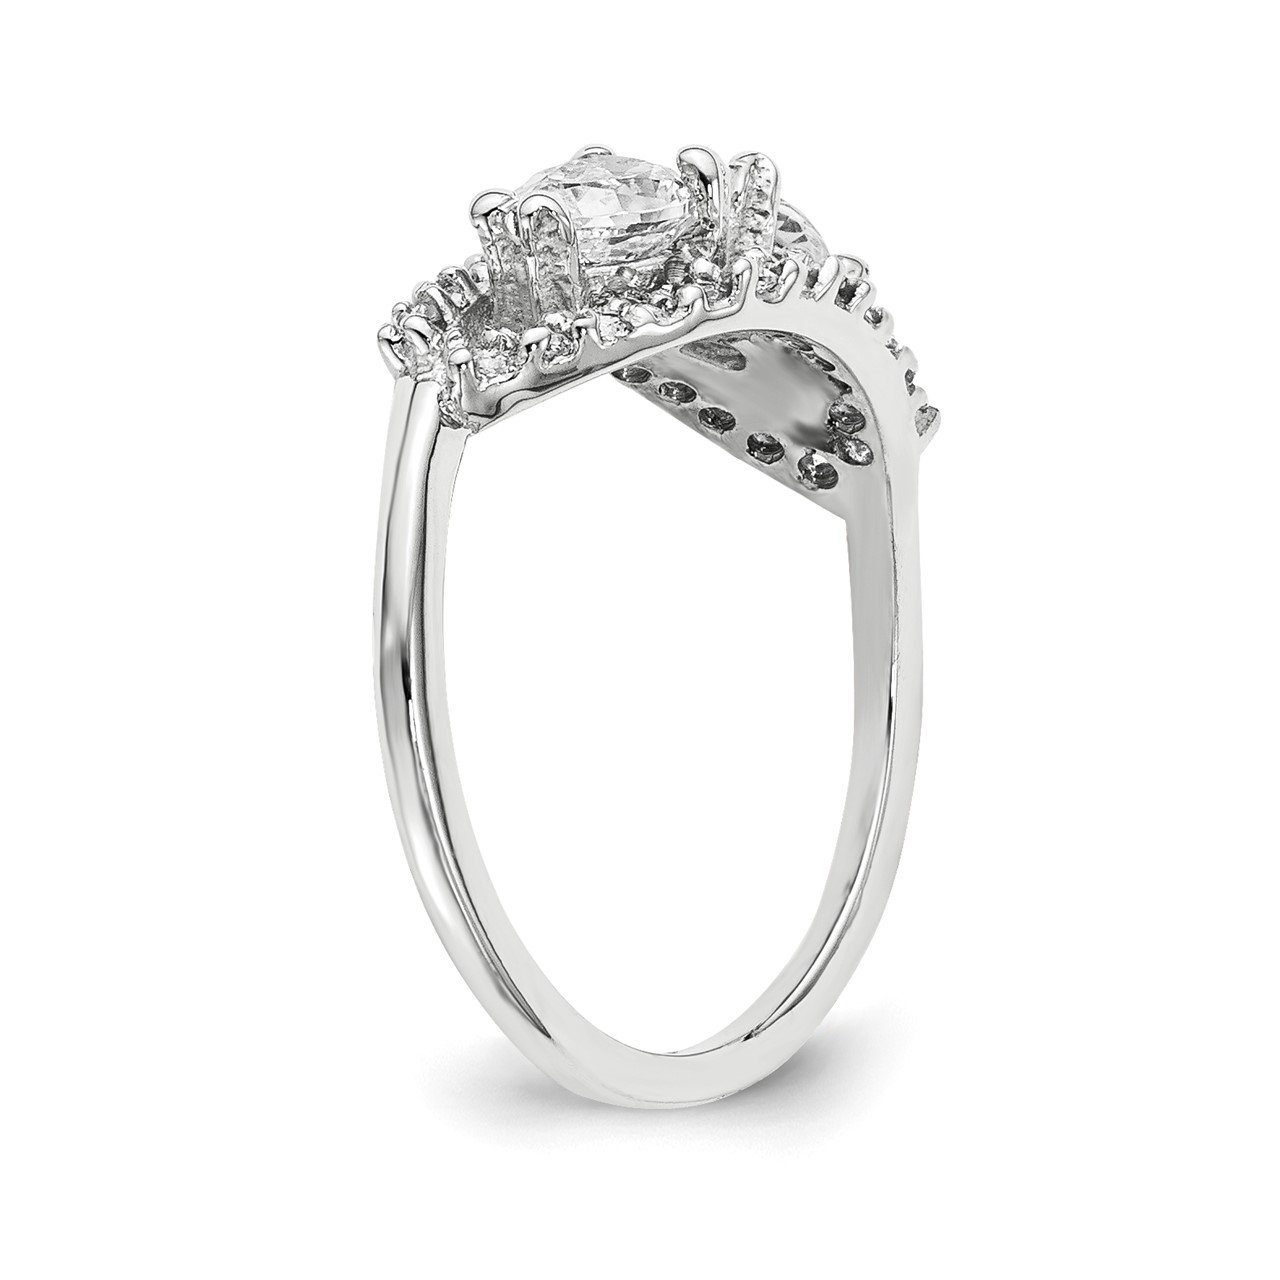 14KW AAA Diamond 2-stone Ring Semi-Mount - 6x4 mm center stones-5